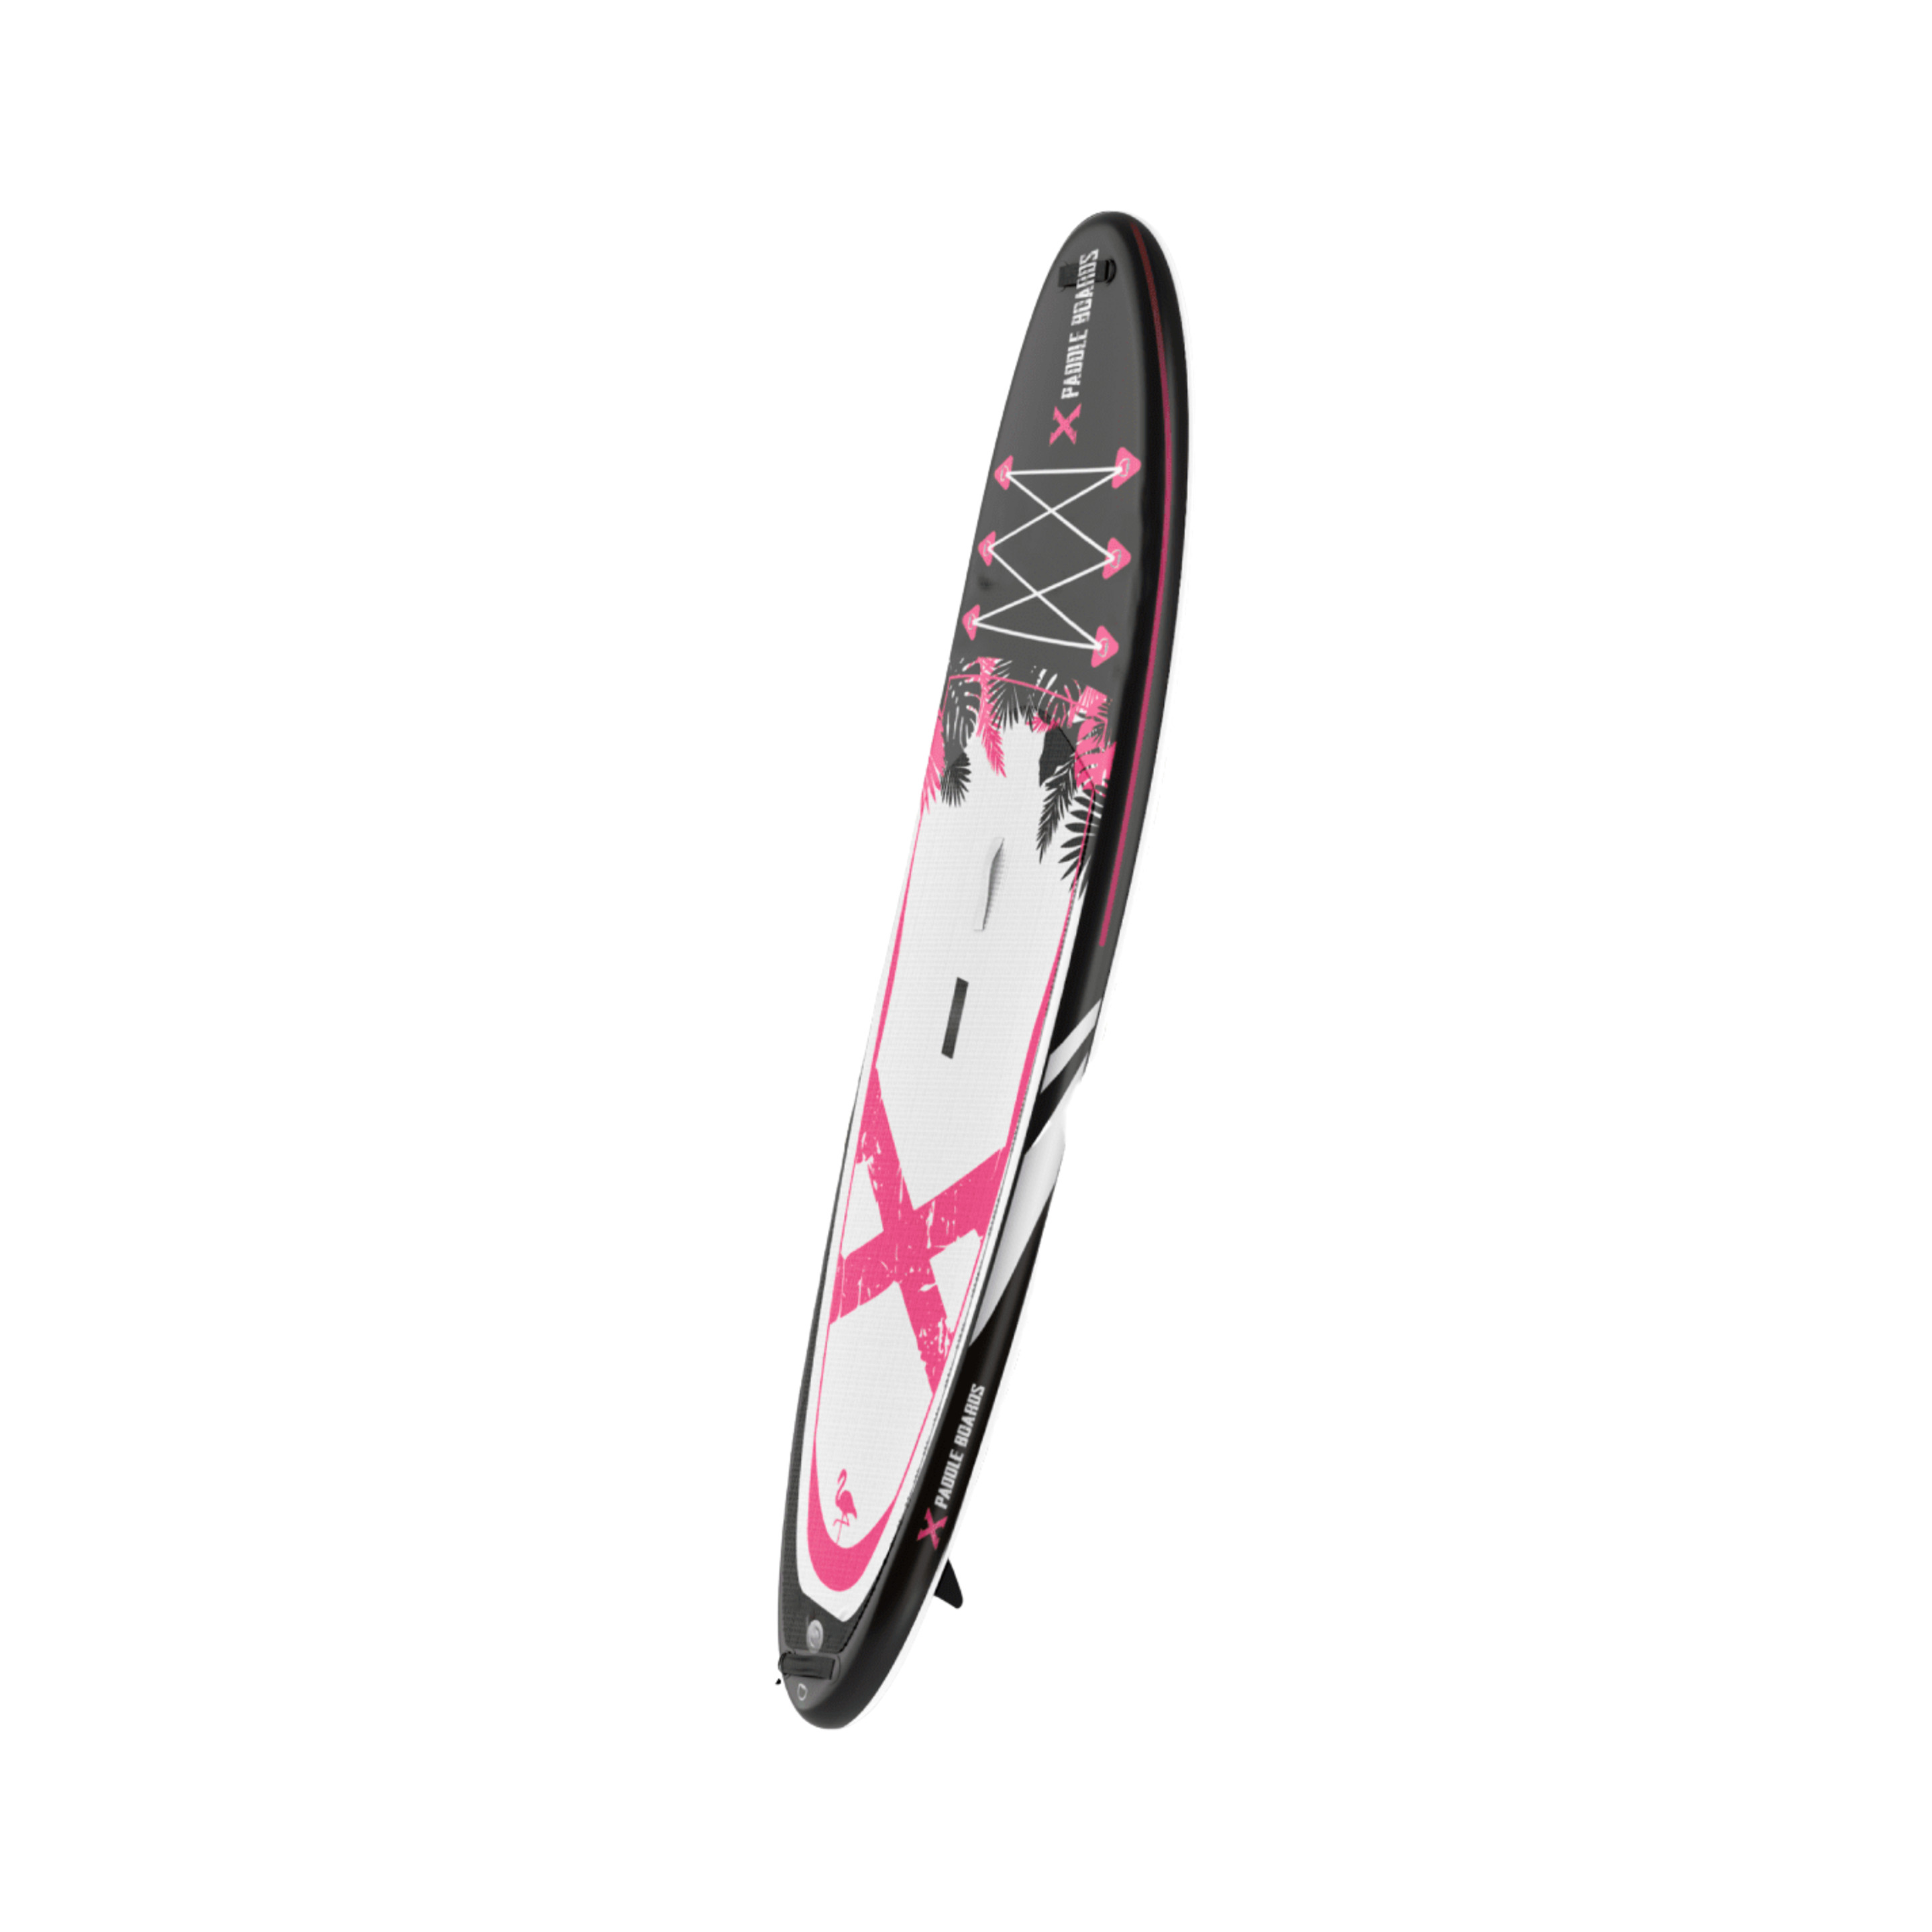 Paddle Insuflável Caiaque X-flamingo X-paddleboards | 10'2 X 32" X 6" (310 X 82 X 15cm)